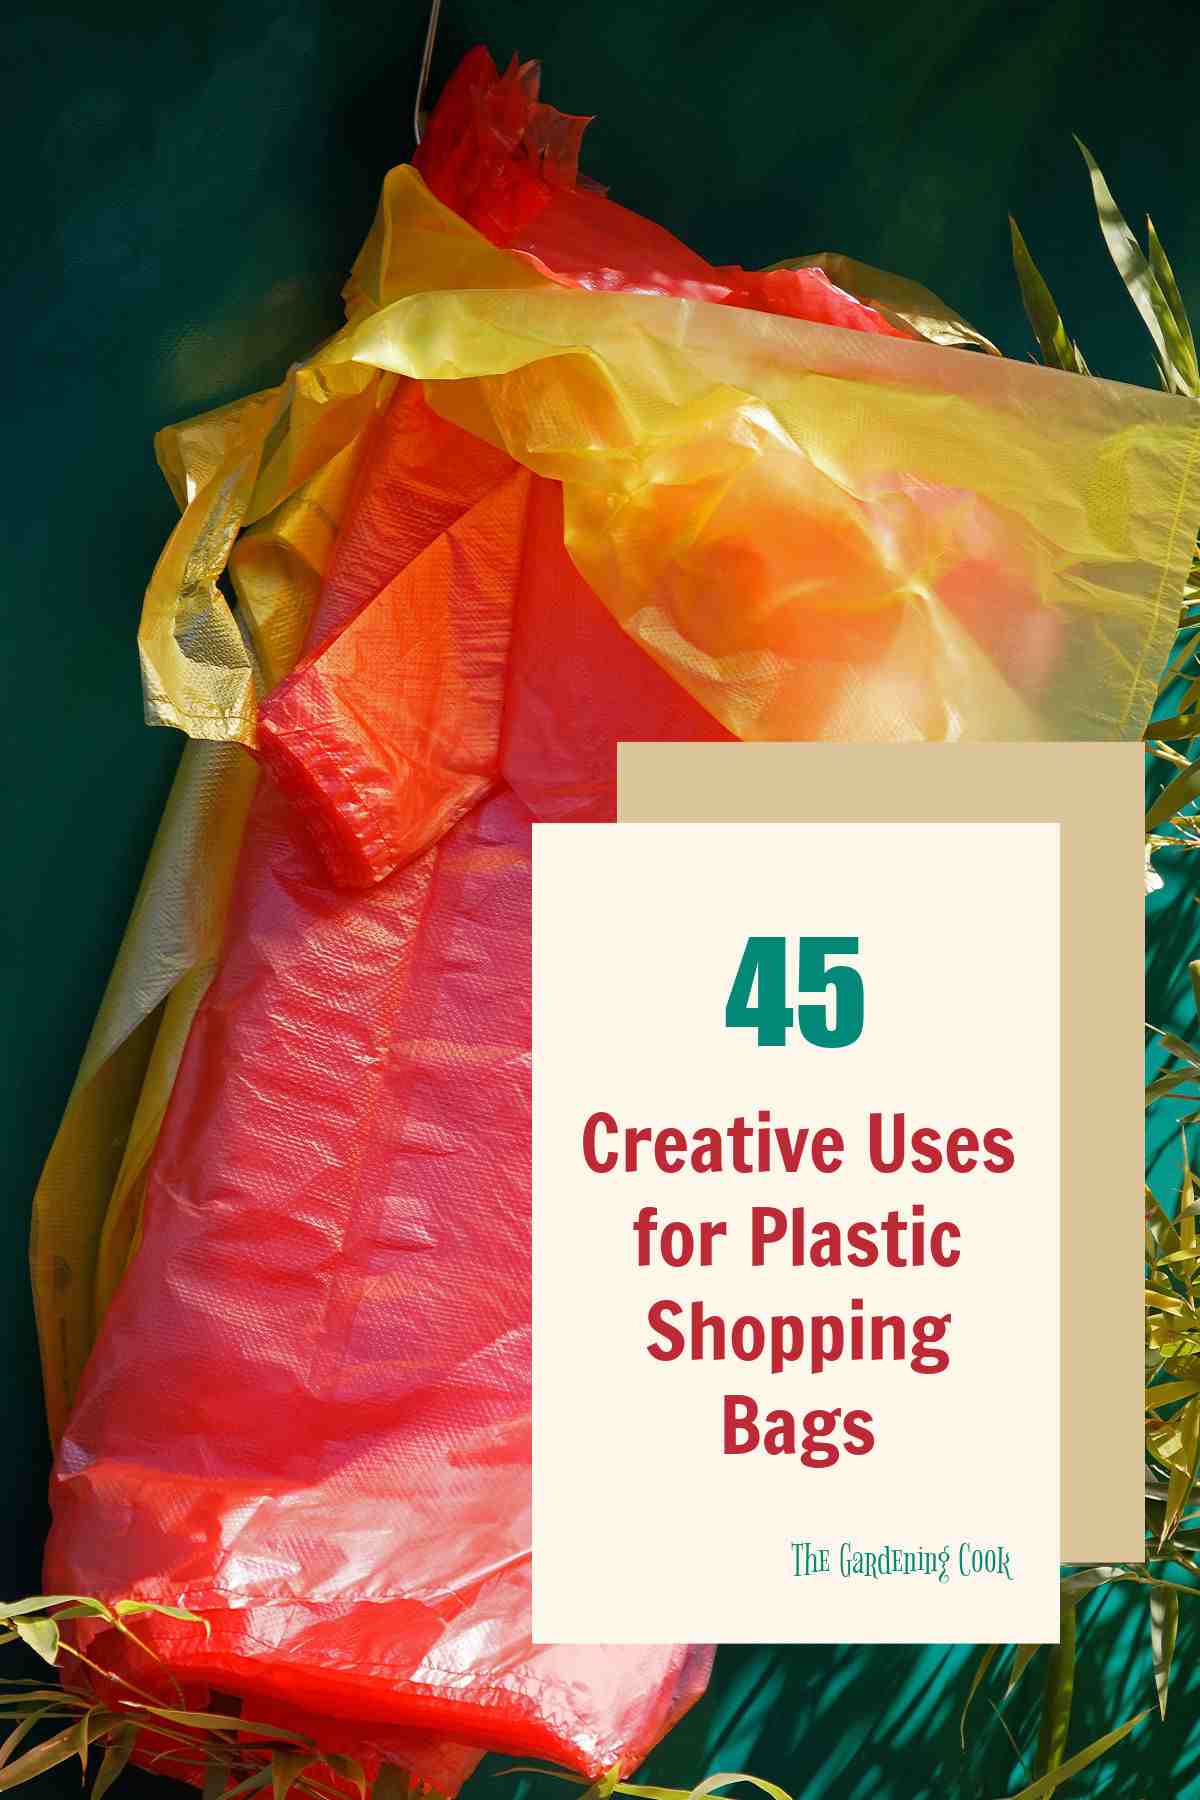 48 gebruike vir plastiek inkopiesakke – Kreatiewe maniere om inkopiesakke te herwin